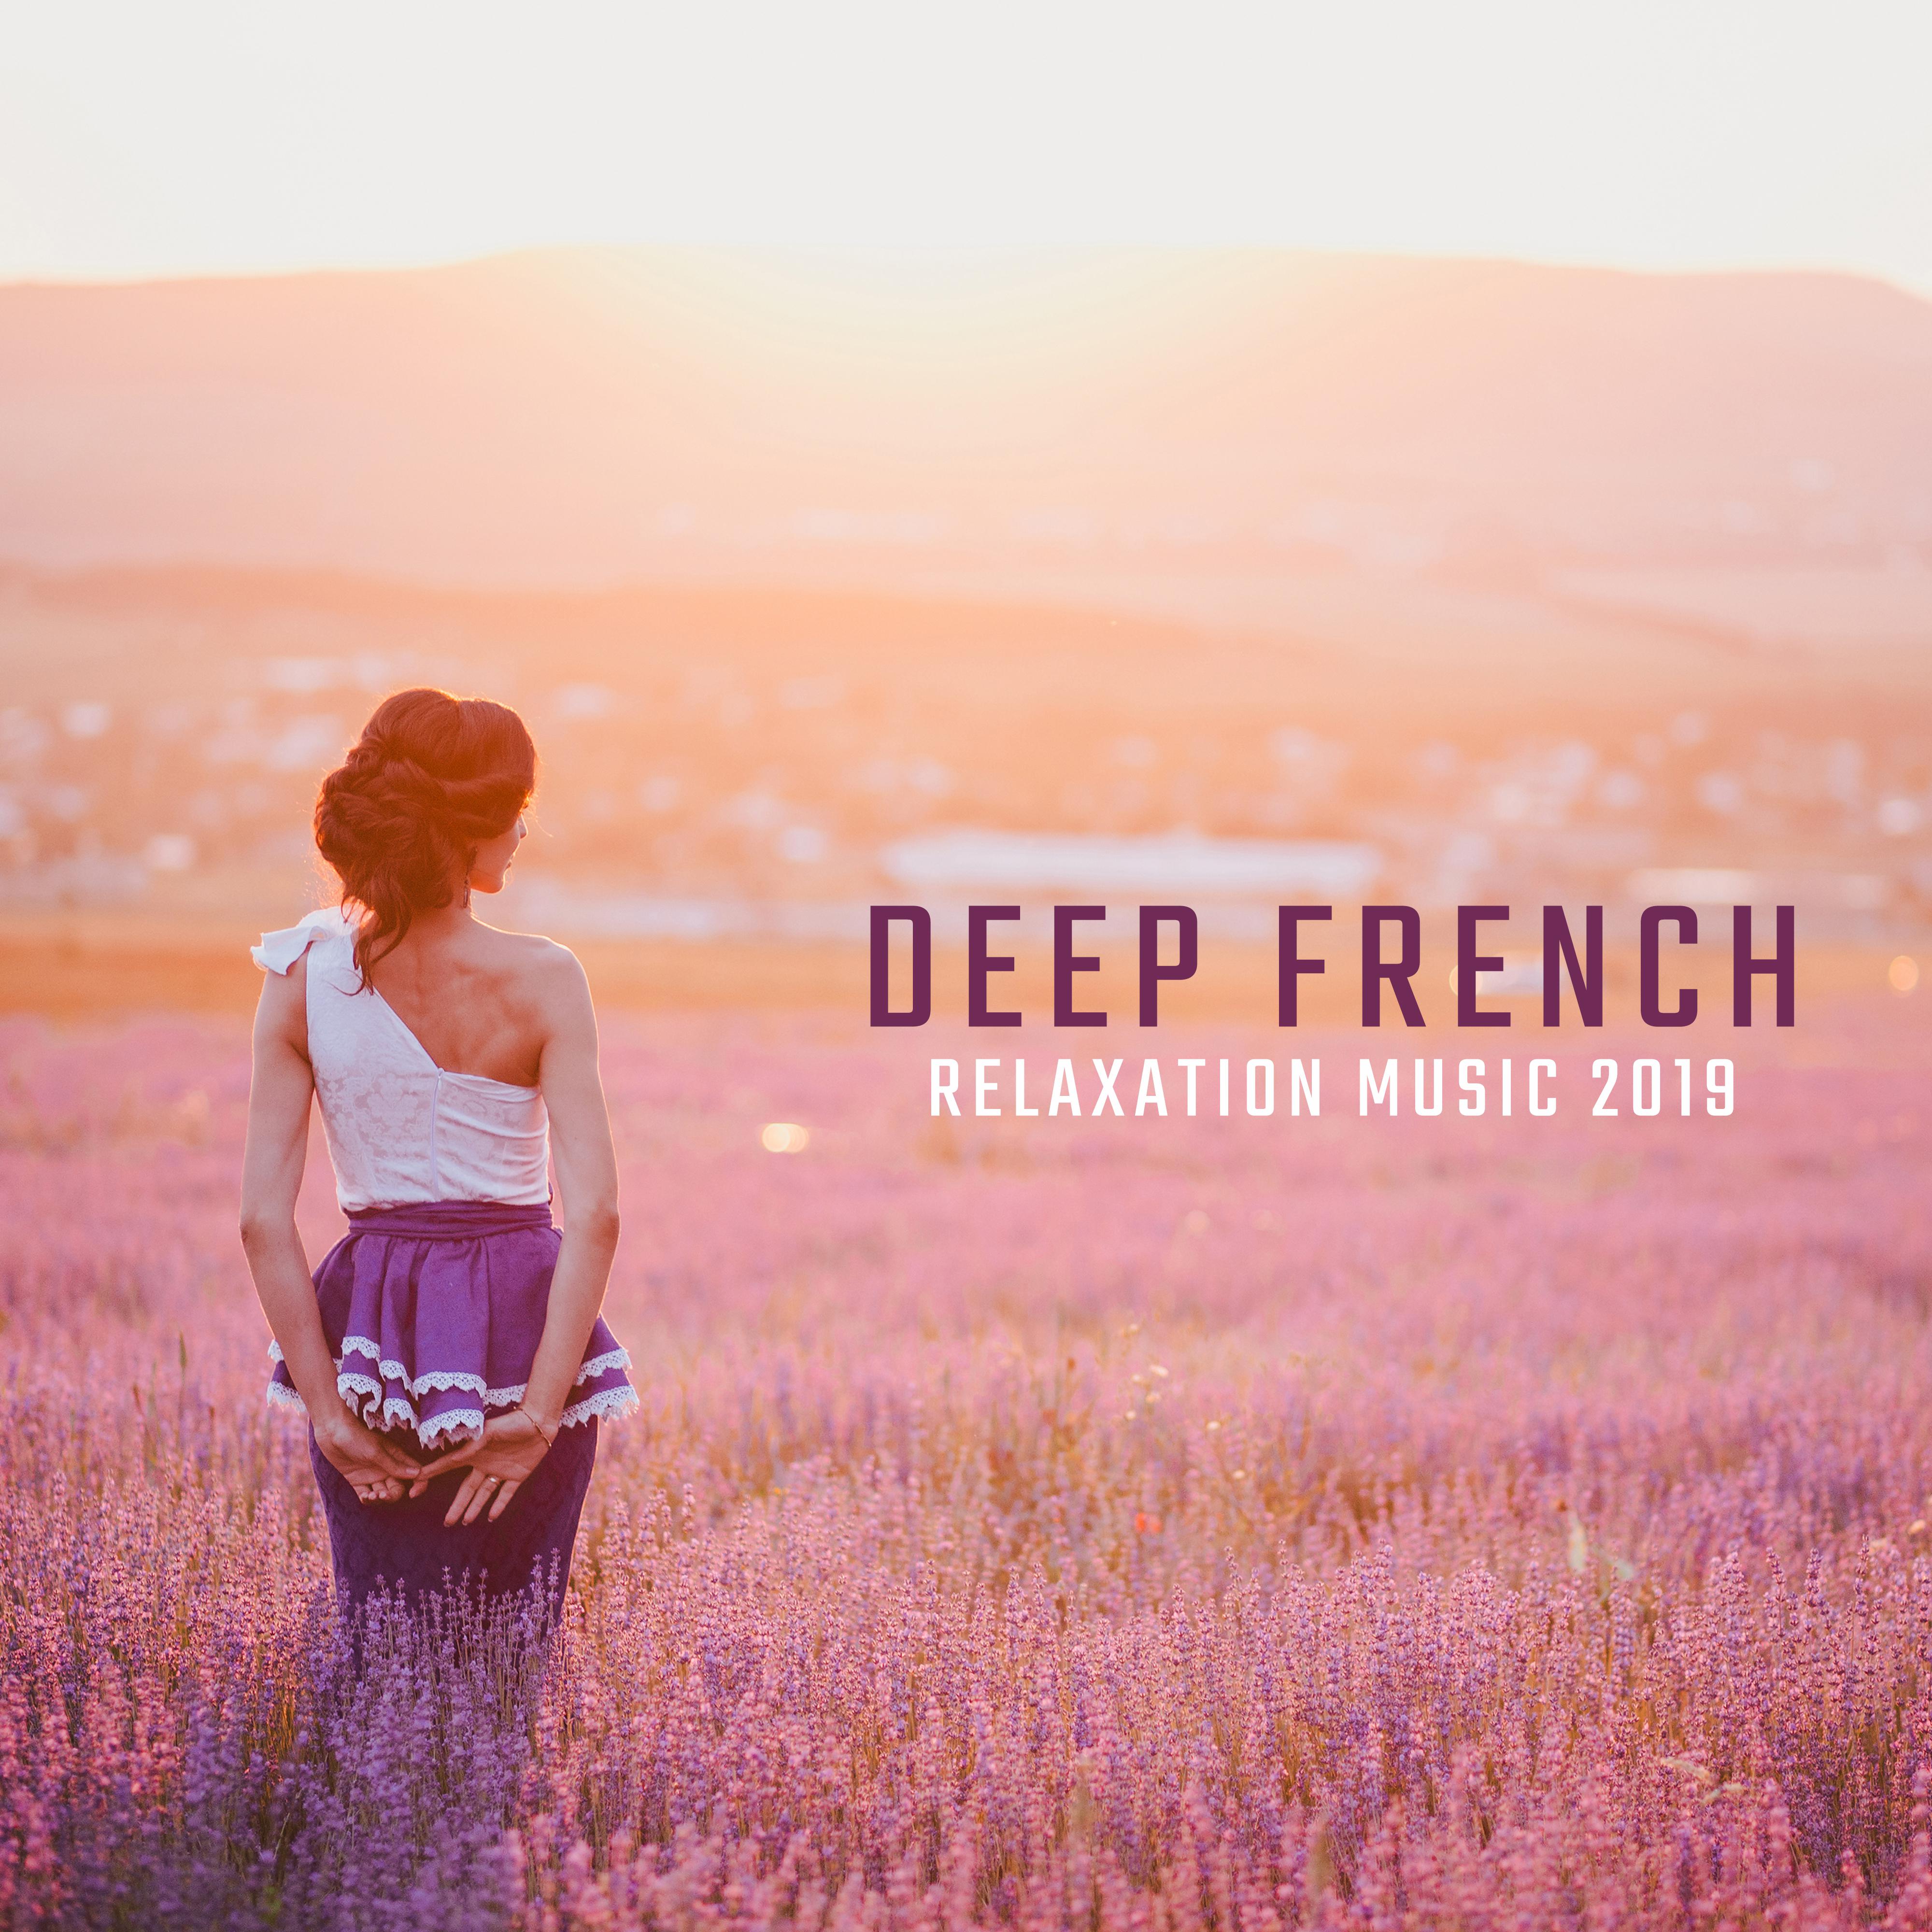 Deep French Relaxation Music 2019: Me lodies Relaxantes pour Relaxer, Musique Apaisante qui Soulage les Nerfs et les Tensions, Apaise les É motions et apporte la Paix